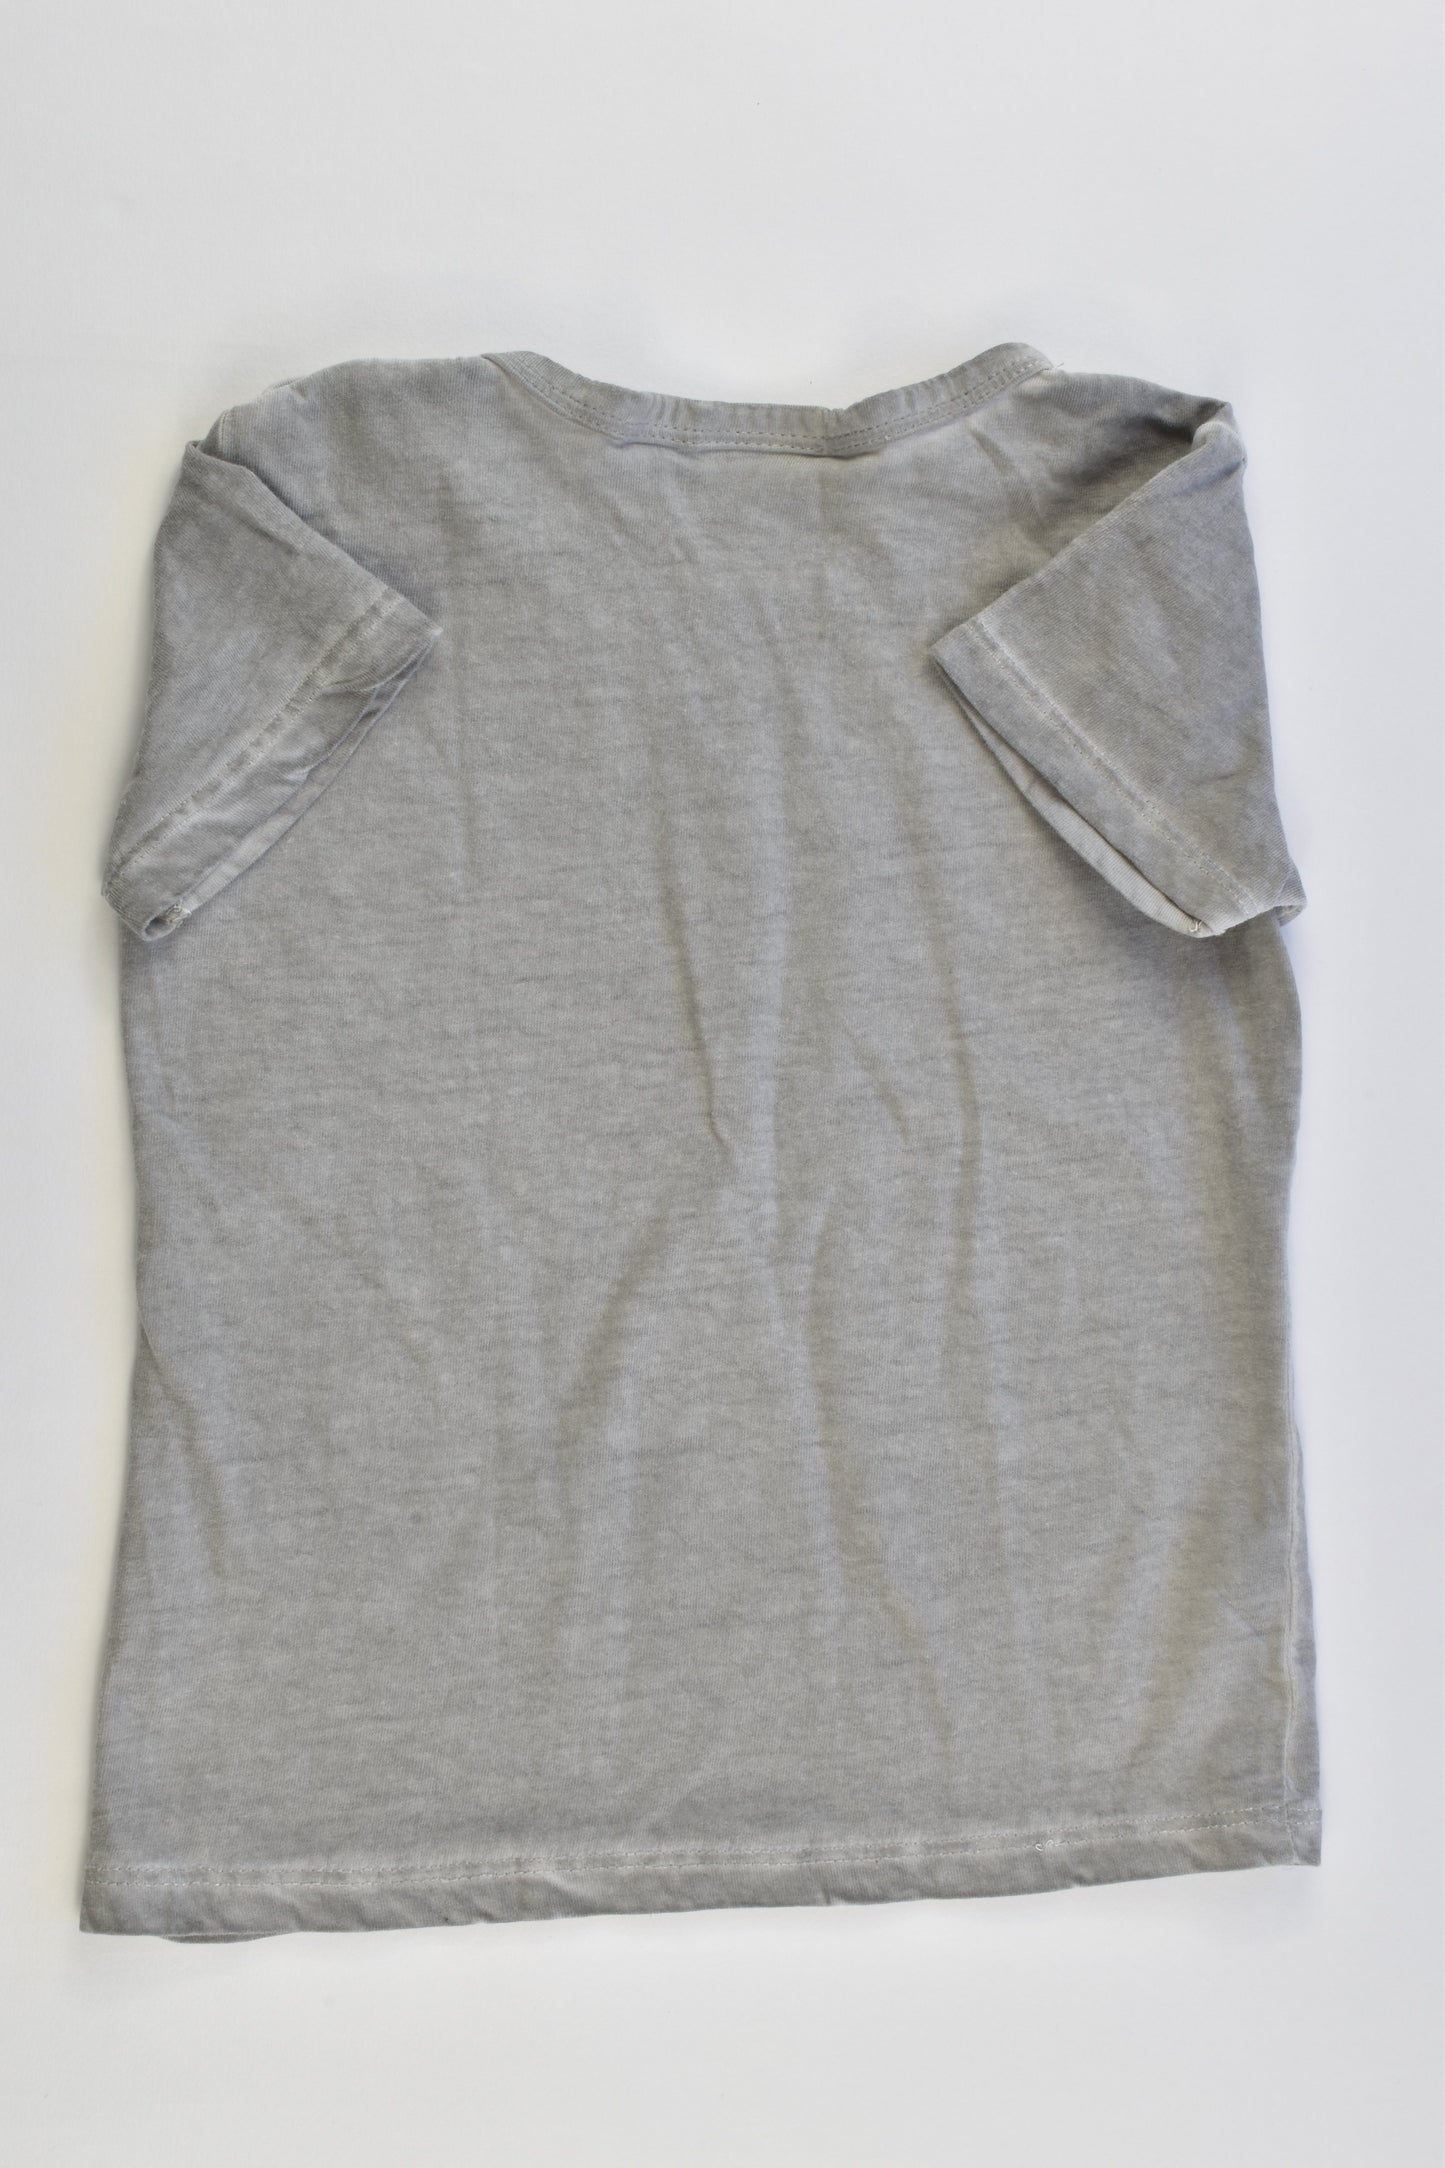 Zara Size 2 (18-24 months, 92 cm) 'Nice Weekend' T-shirt